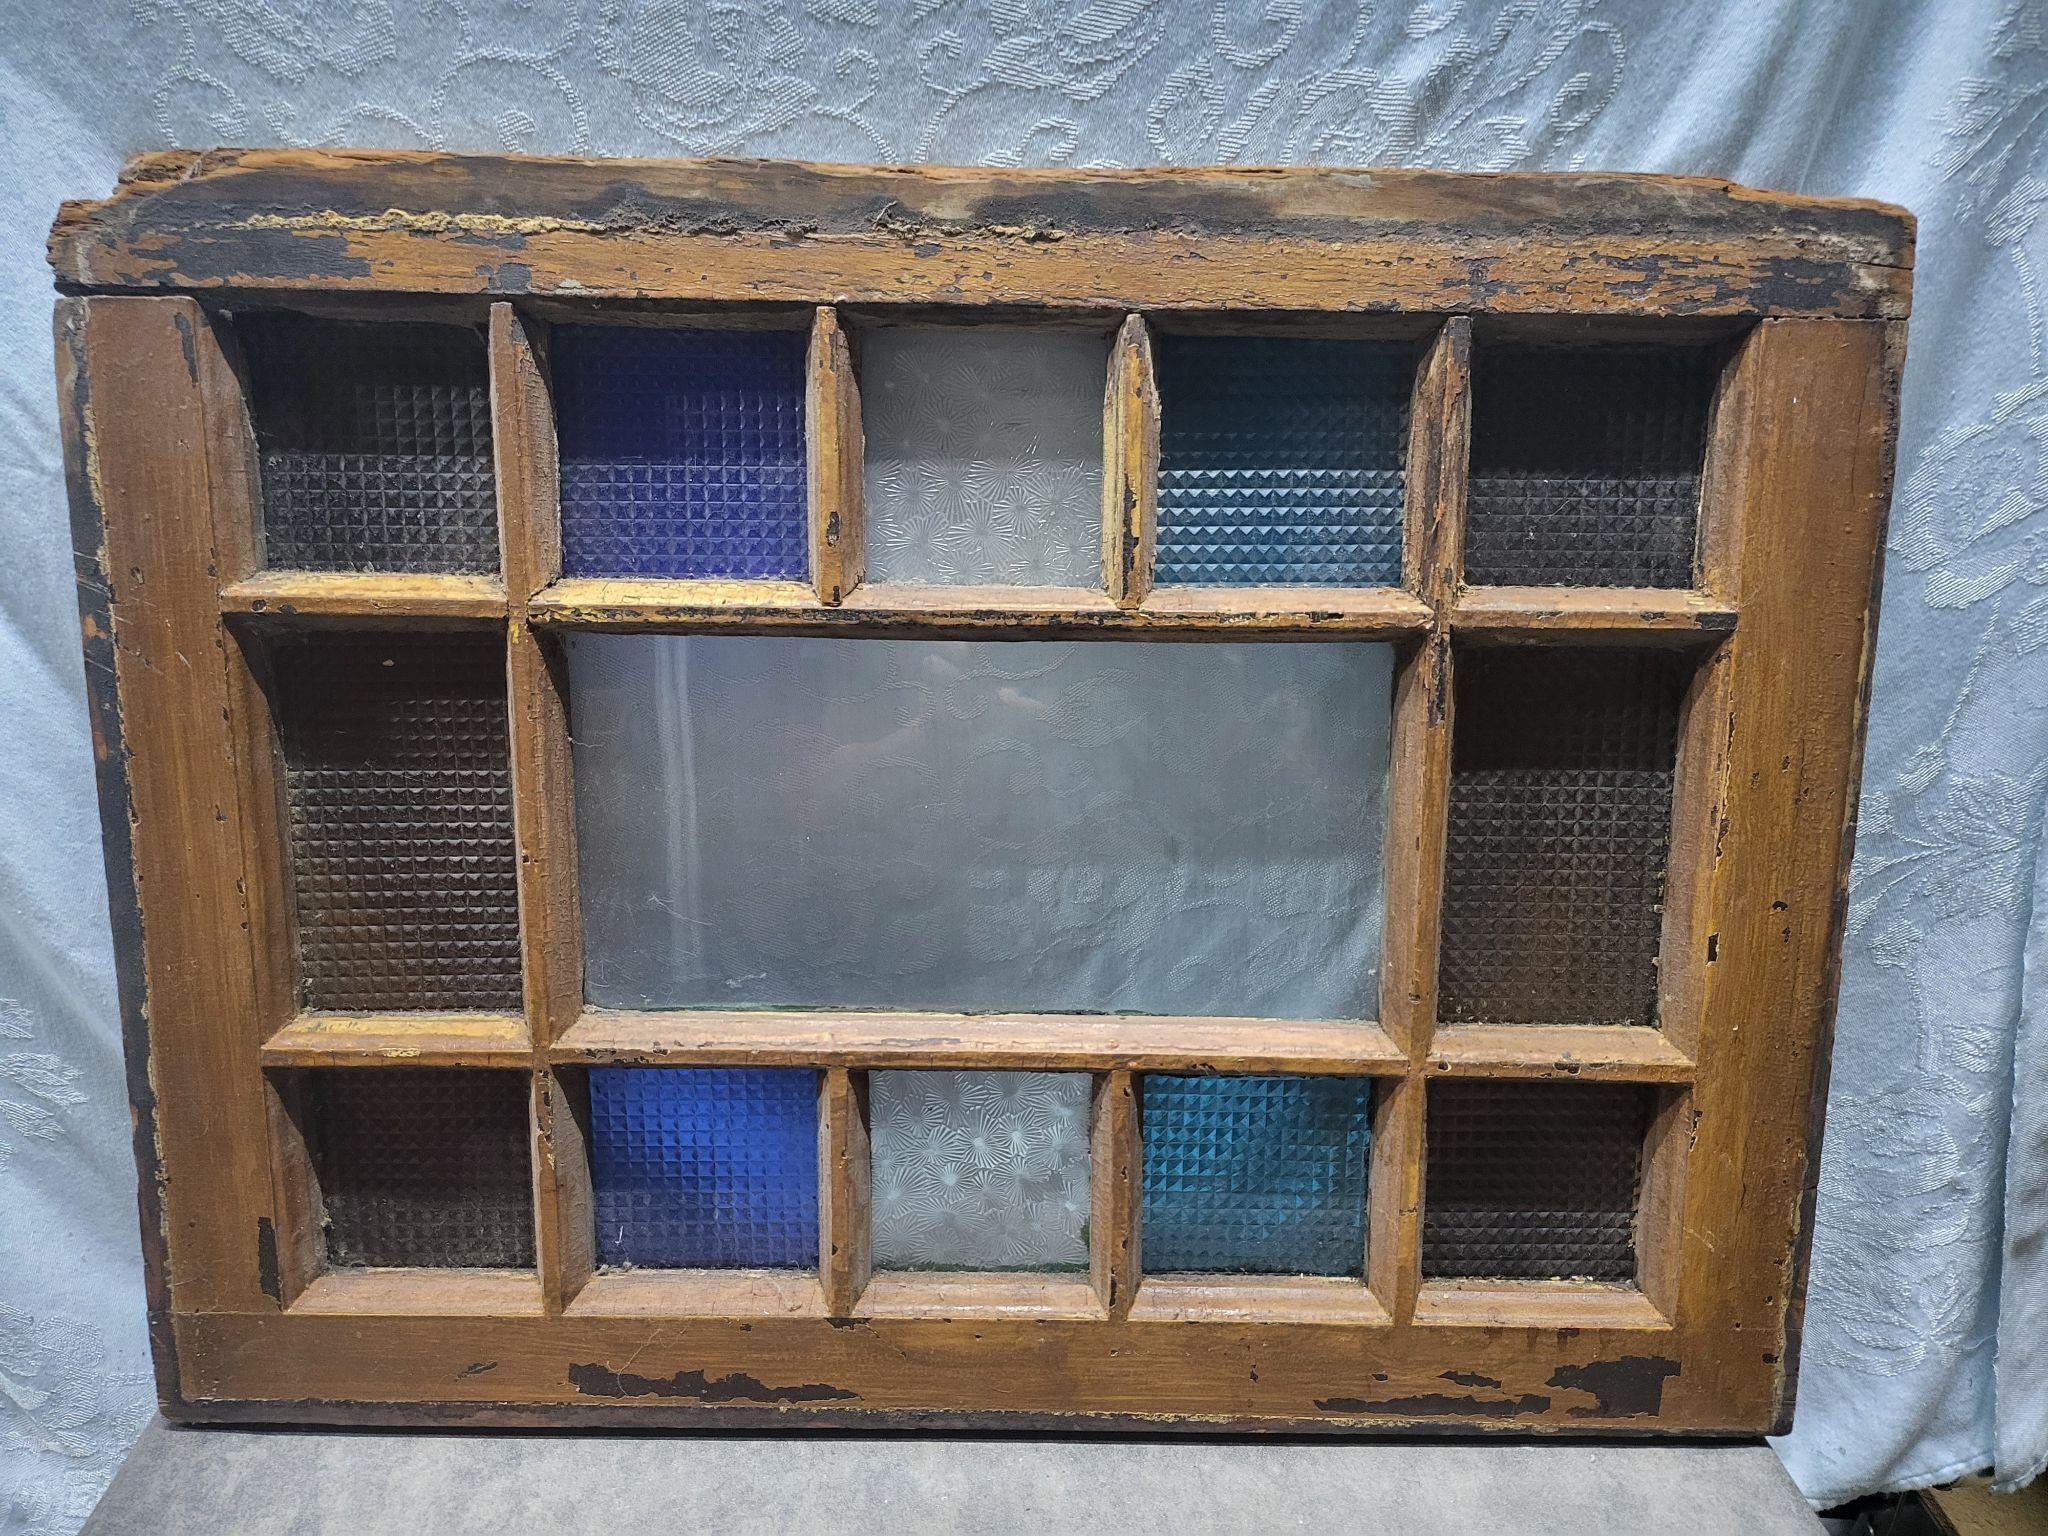 Antique window pane